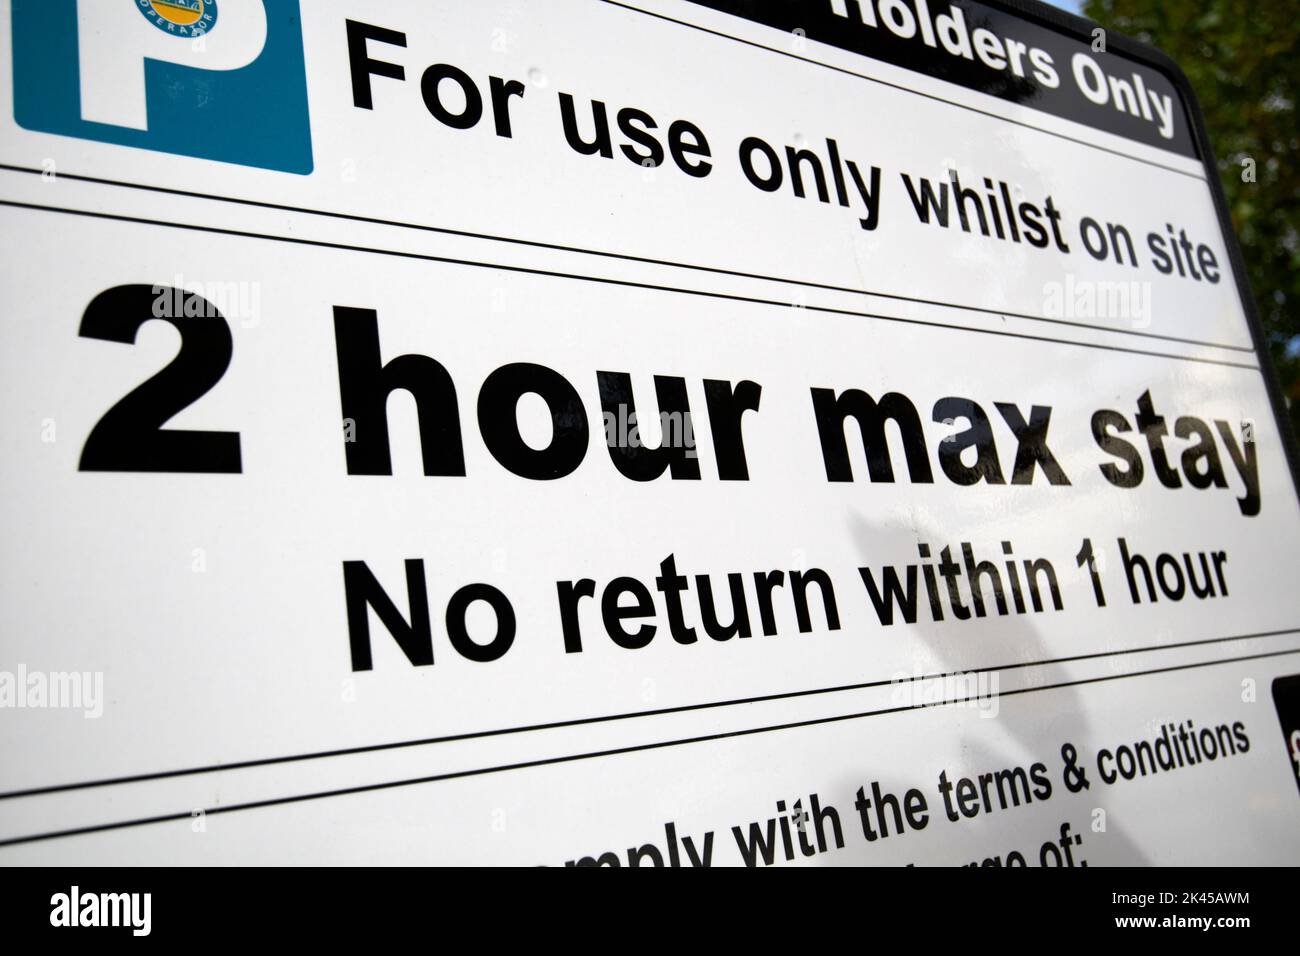 restricciones de estacionamiento de estancia máxima de 2 horas en el reino unido Foto de stock